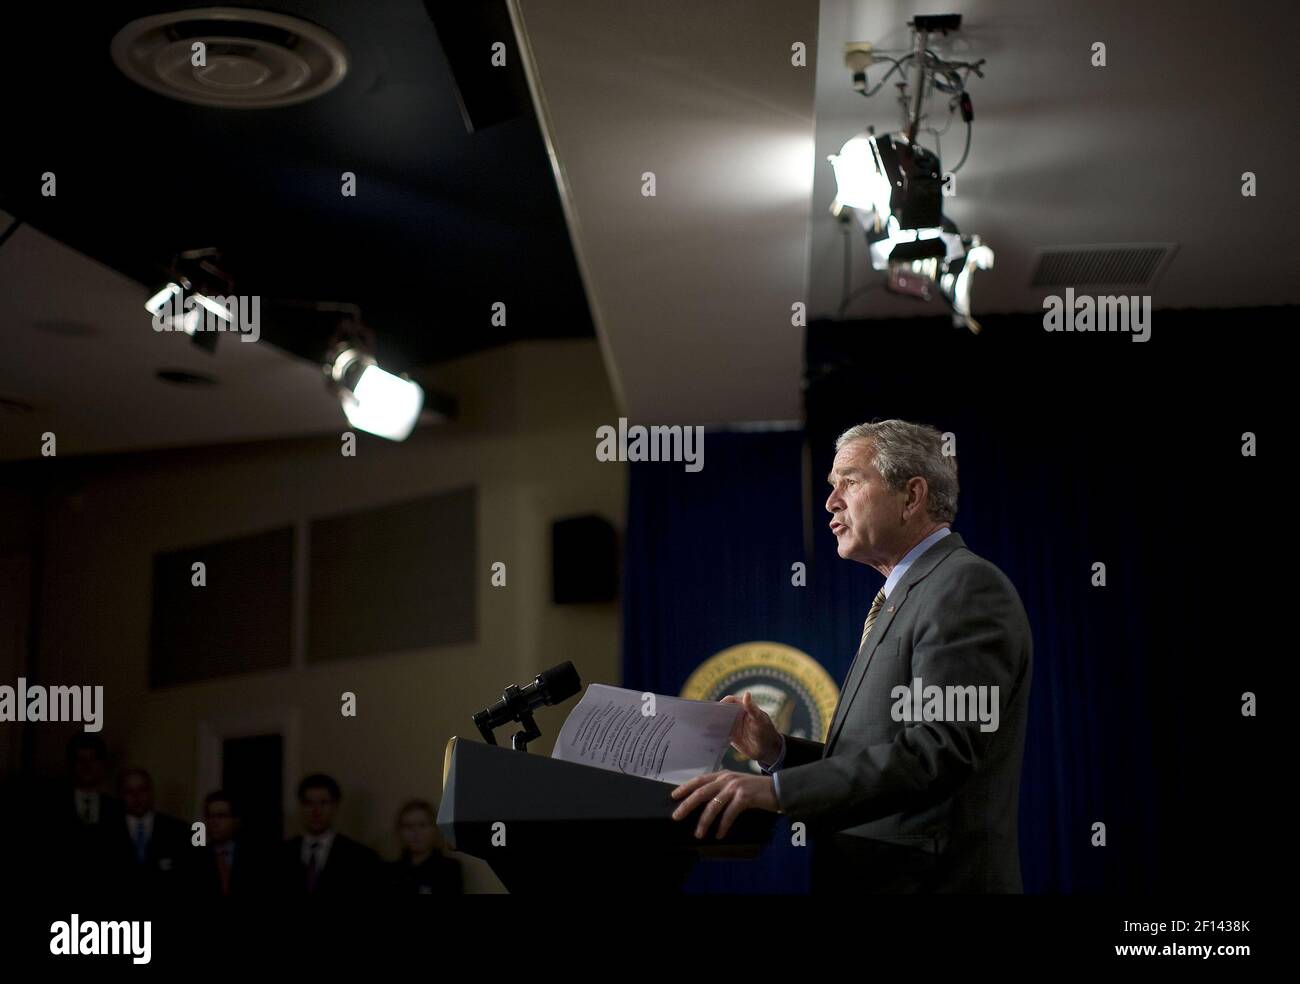 Präsident George W. Bush nimmt am Montag, den 7. April 2008, in Washington eine Stellungnahme zum kolumbianischen Freihandelsabkommen vor. D.C. (Foto: Chuck Kennedy/MCT/Sipa USA) Stockfoto